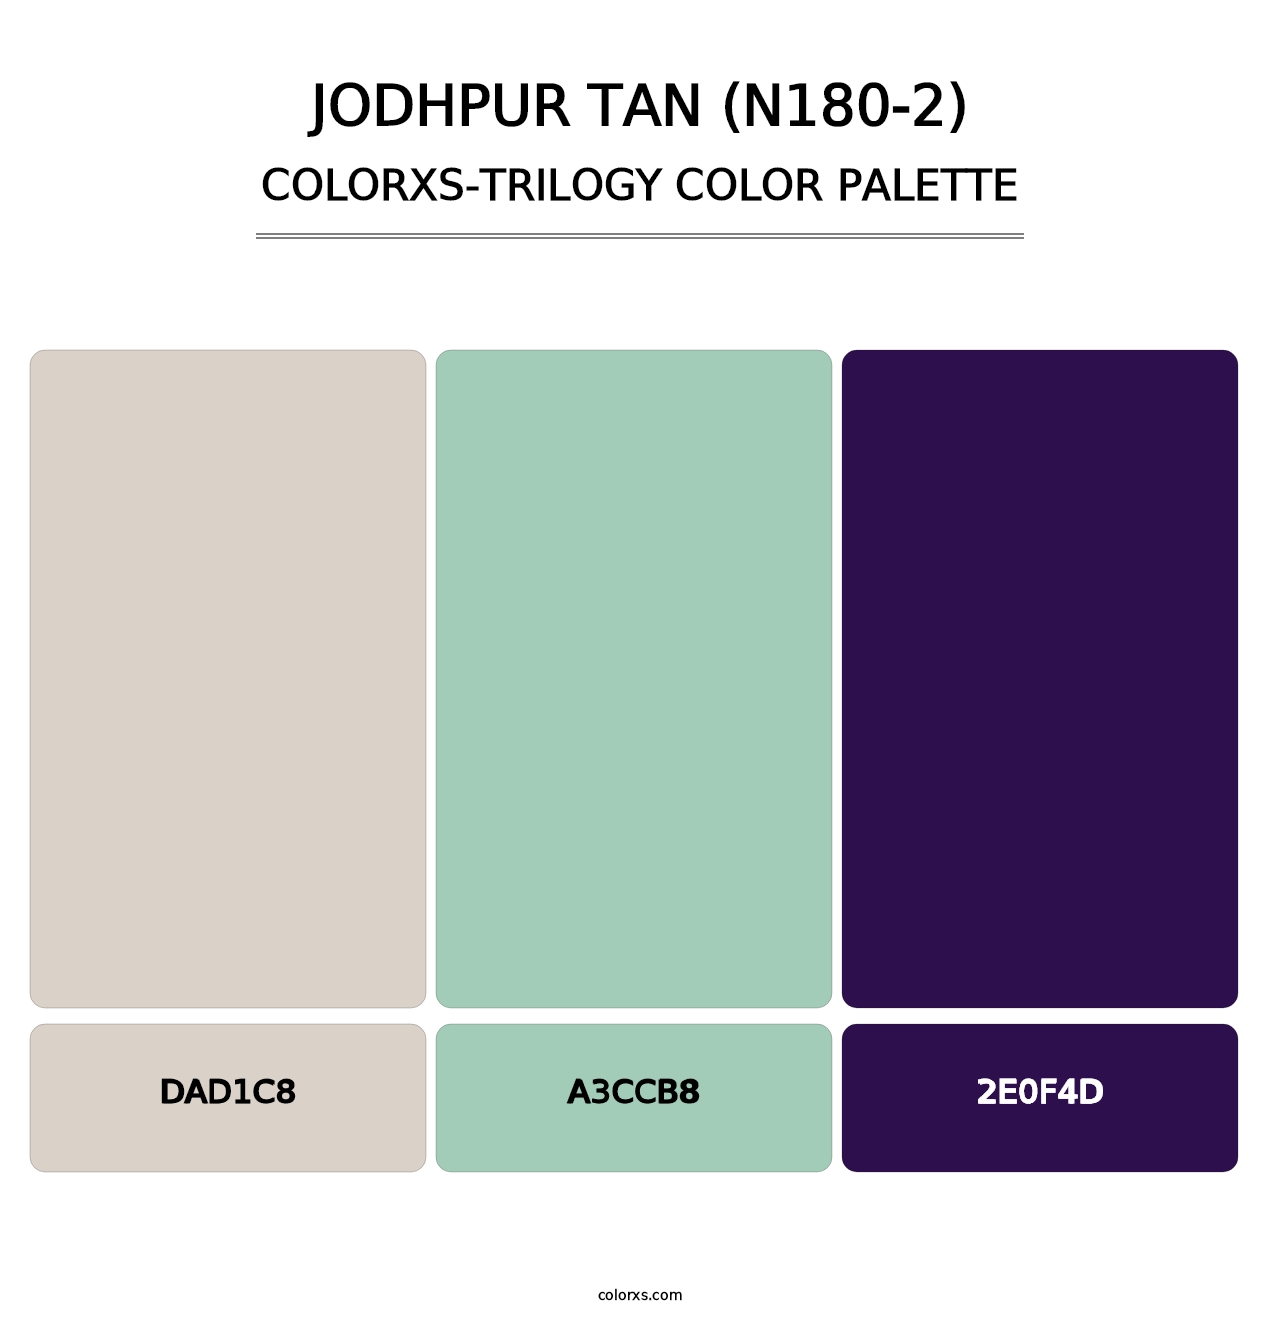 Jodhpur Tan (N180-2) - Colorxs Trilogy Palette